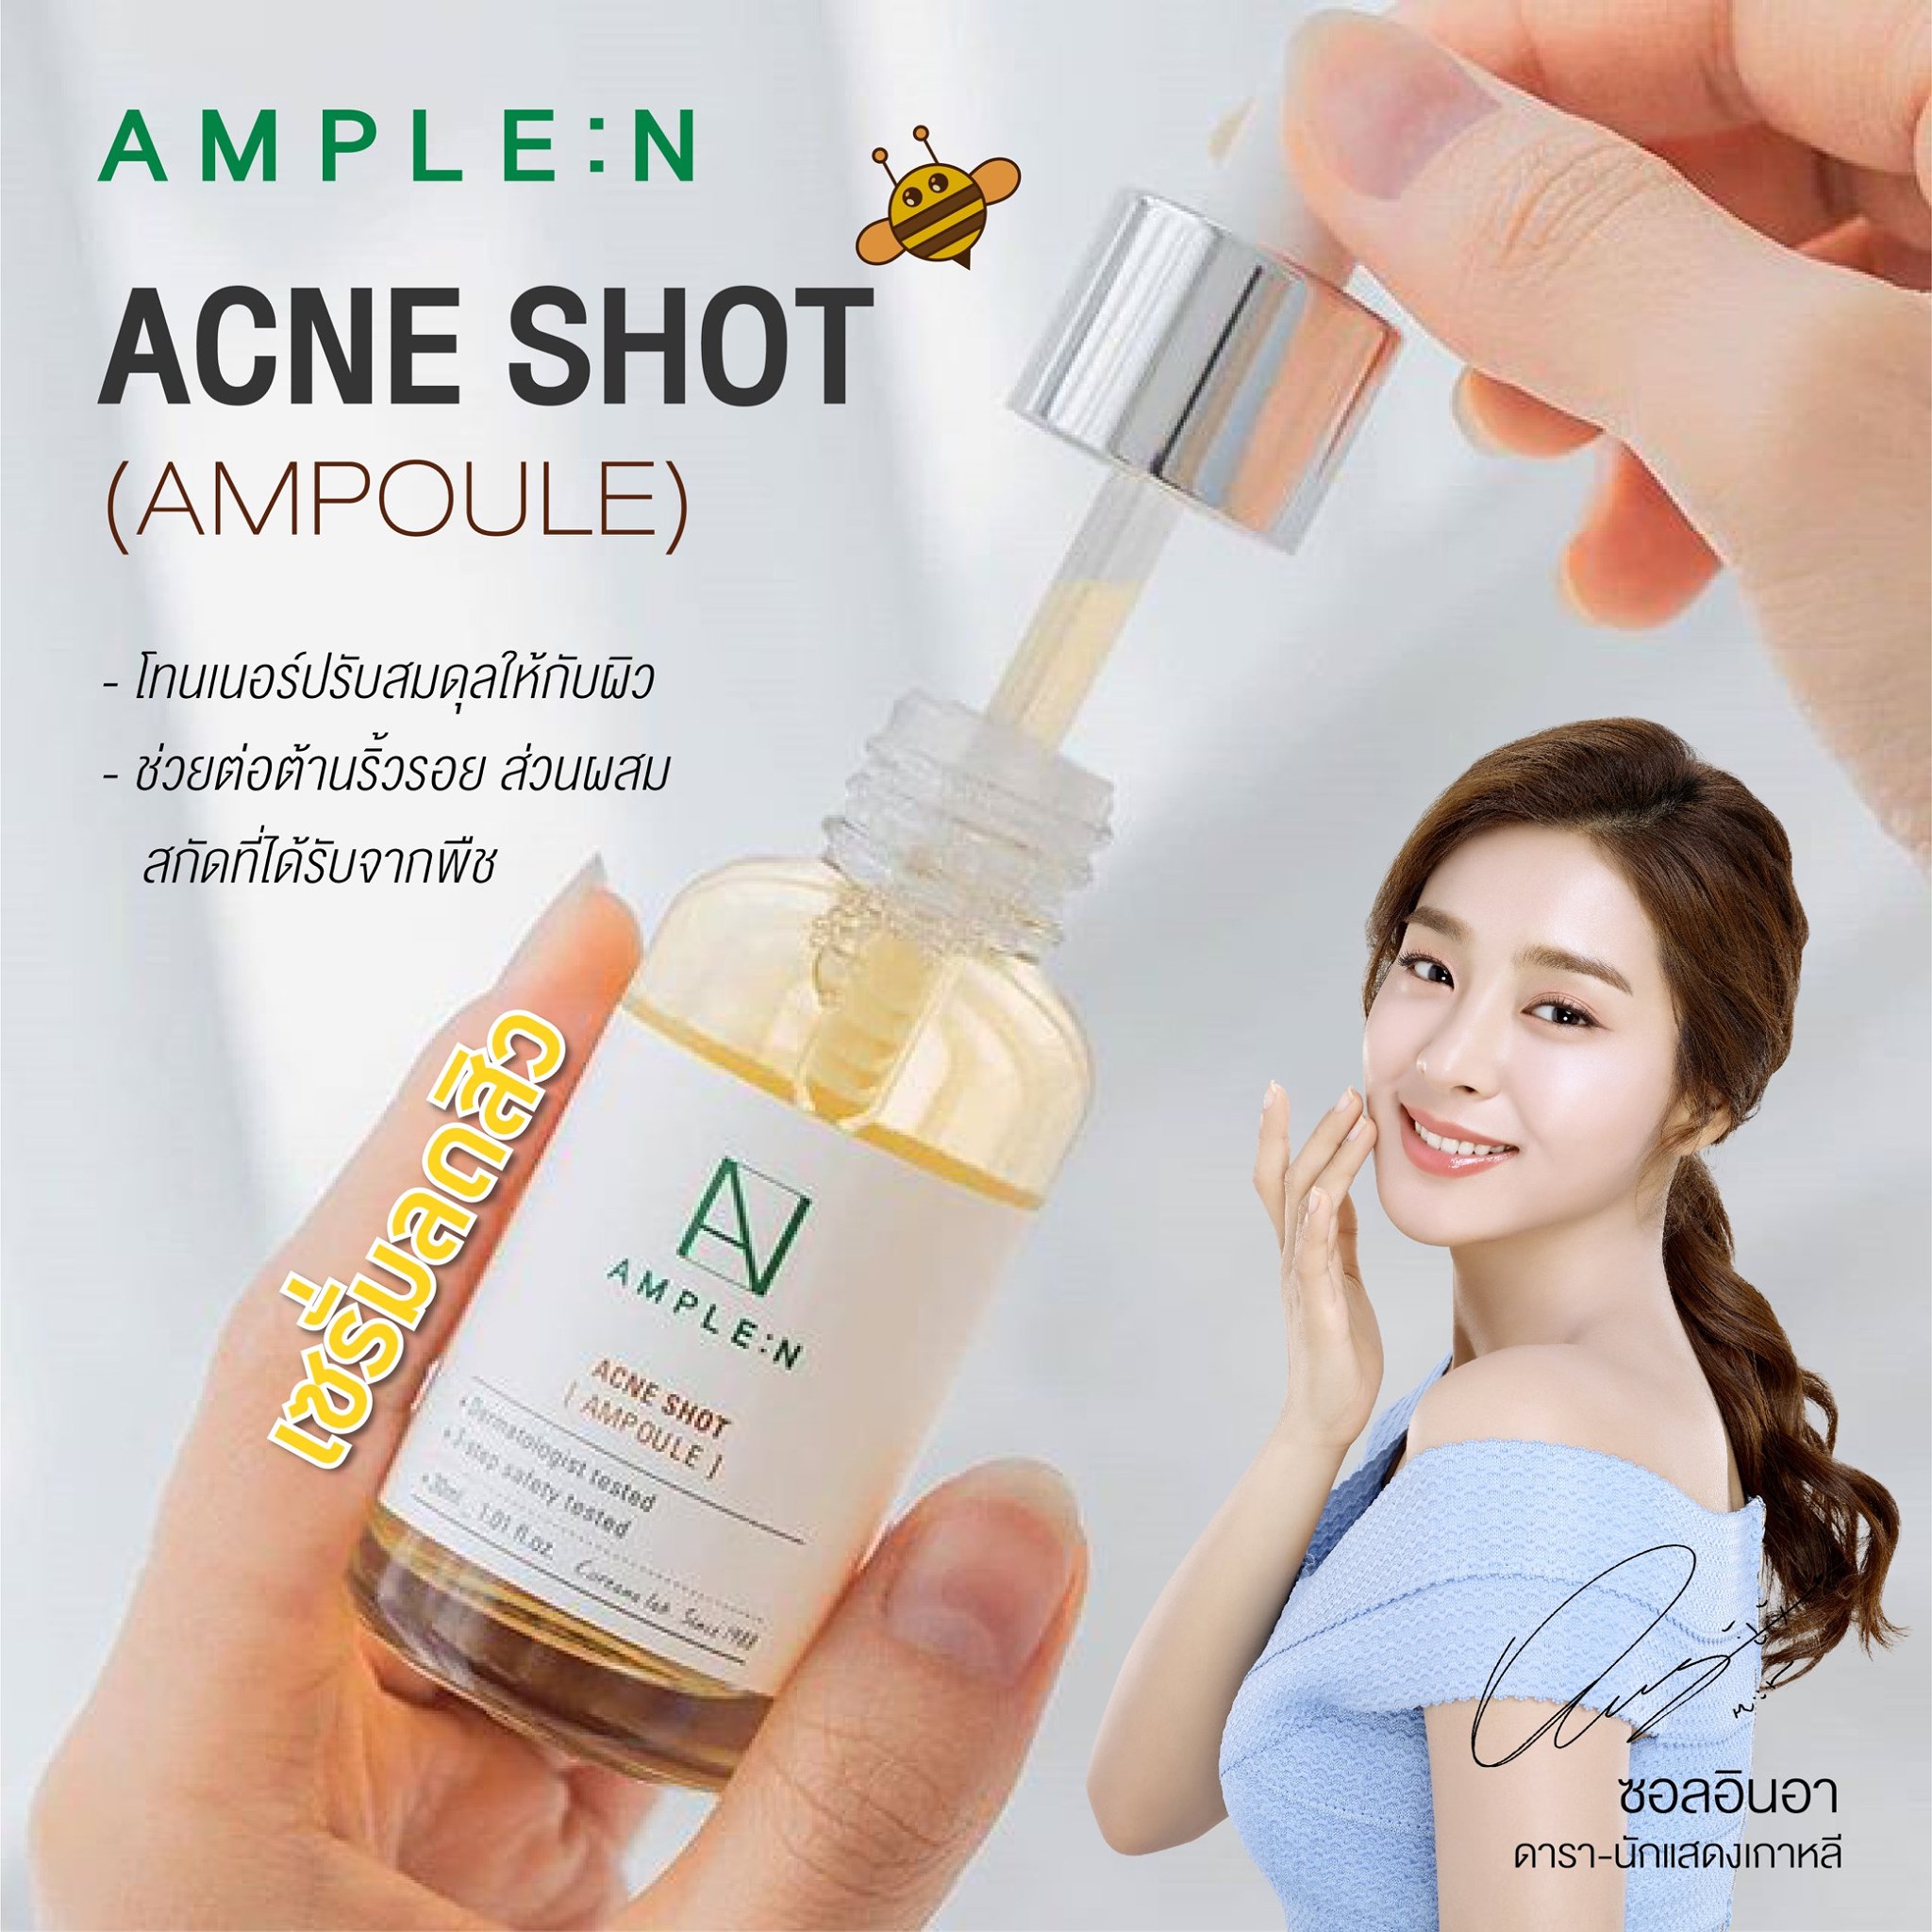 Coreana Lab Ample:N Acne Shot Ampoule 30ml